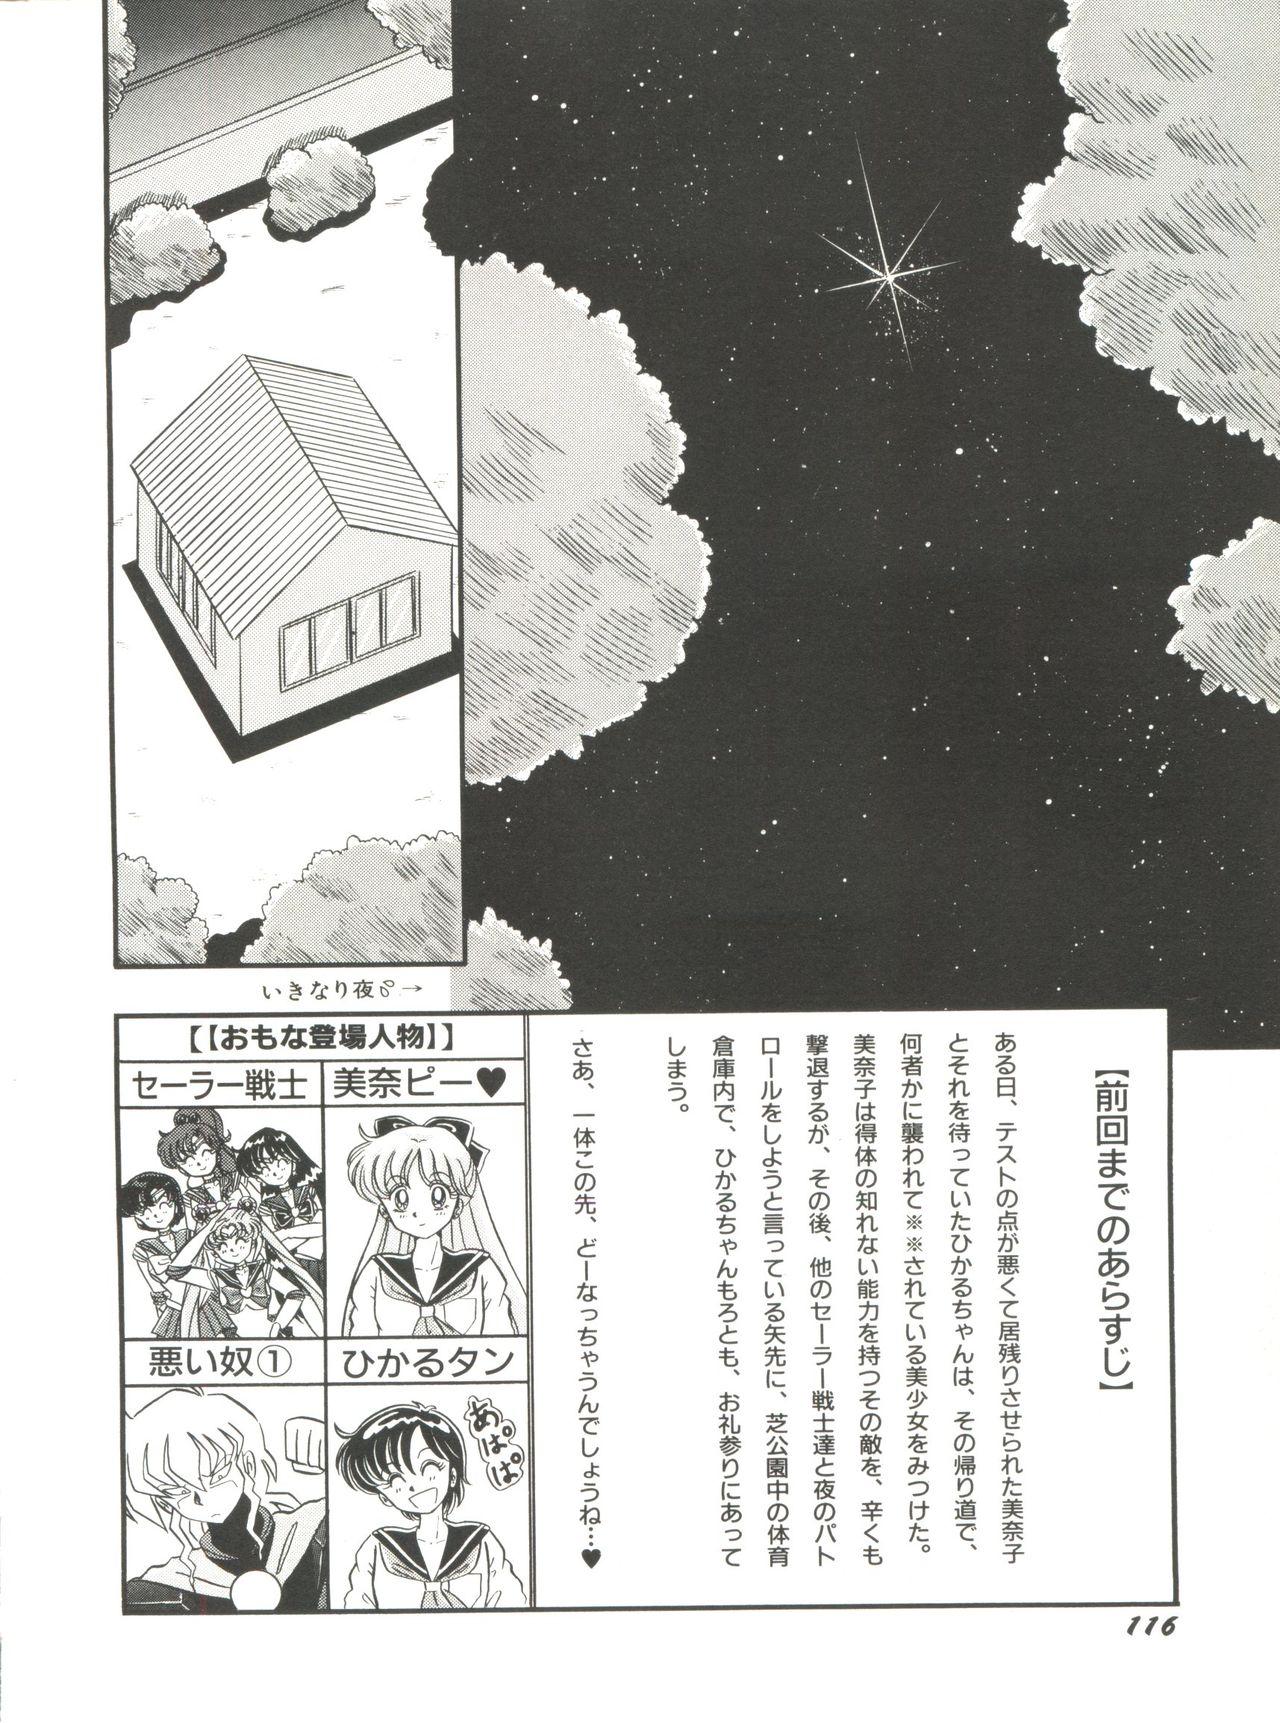 Bishoujo Doujinshi Anthology 5 - Moon Paradise 3 Tsuki no Rakuen 117